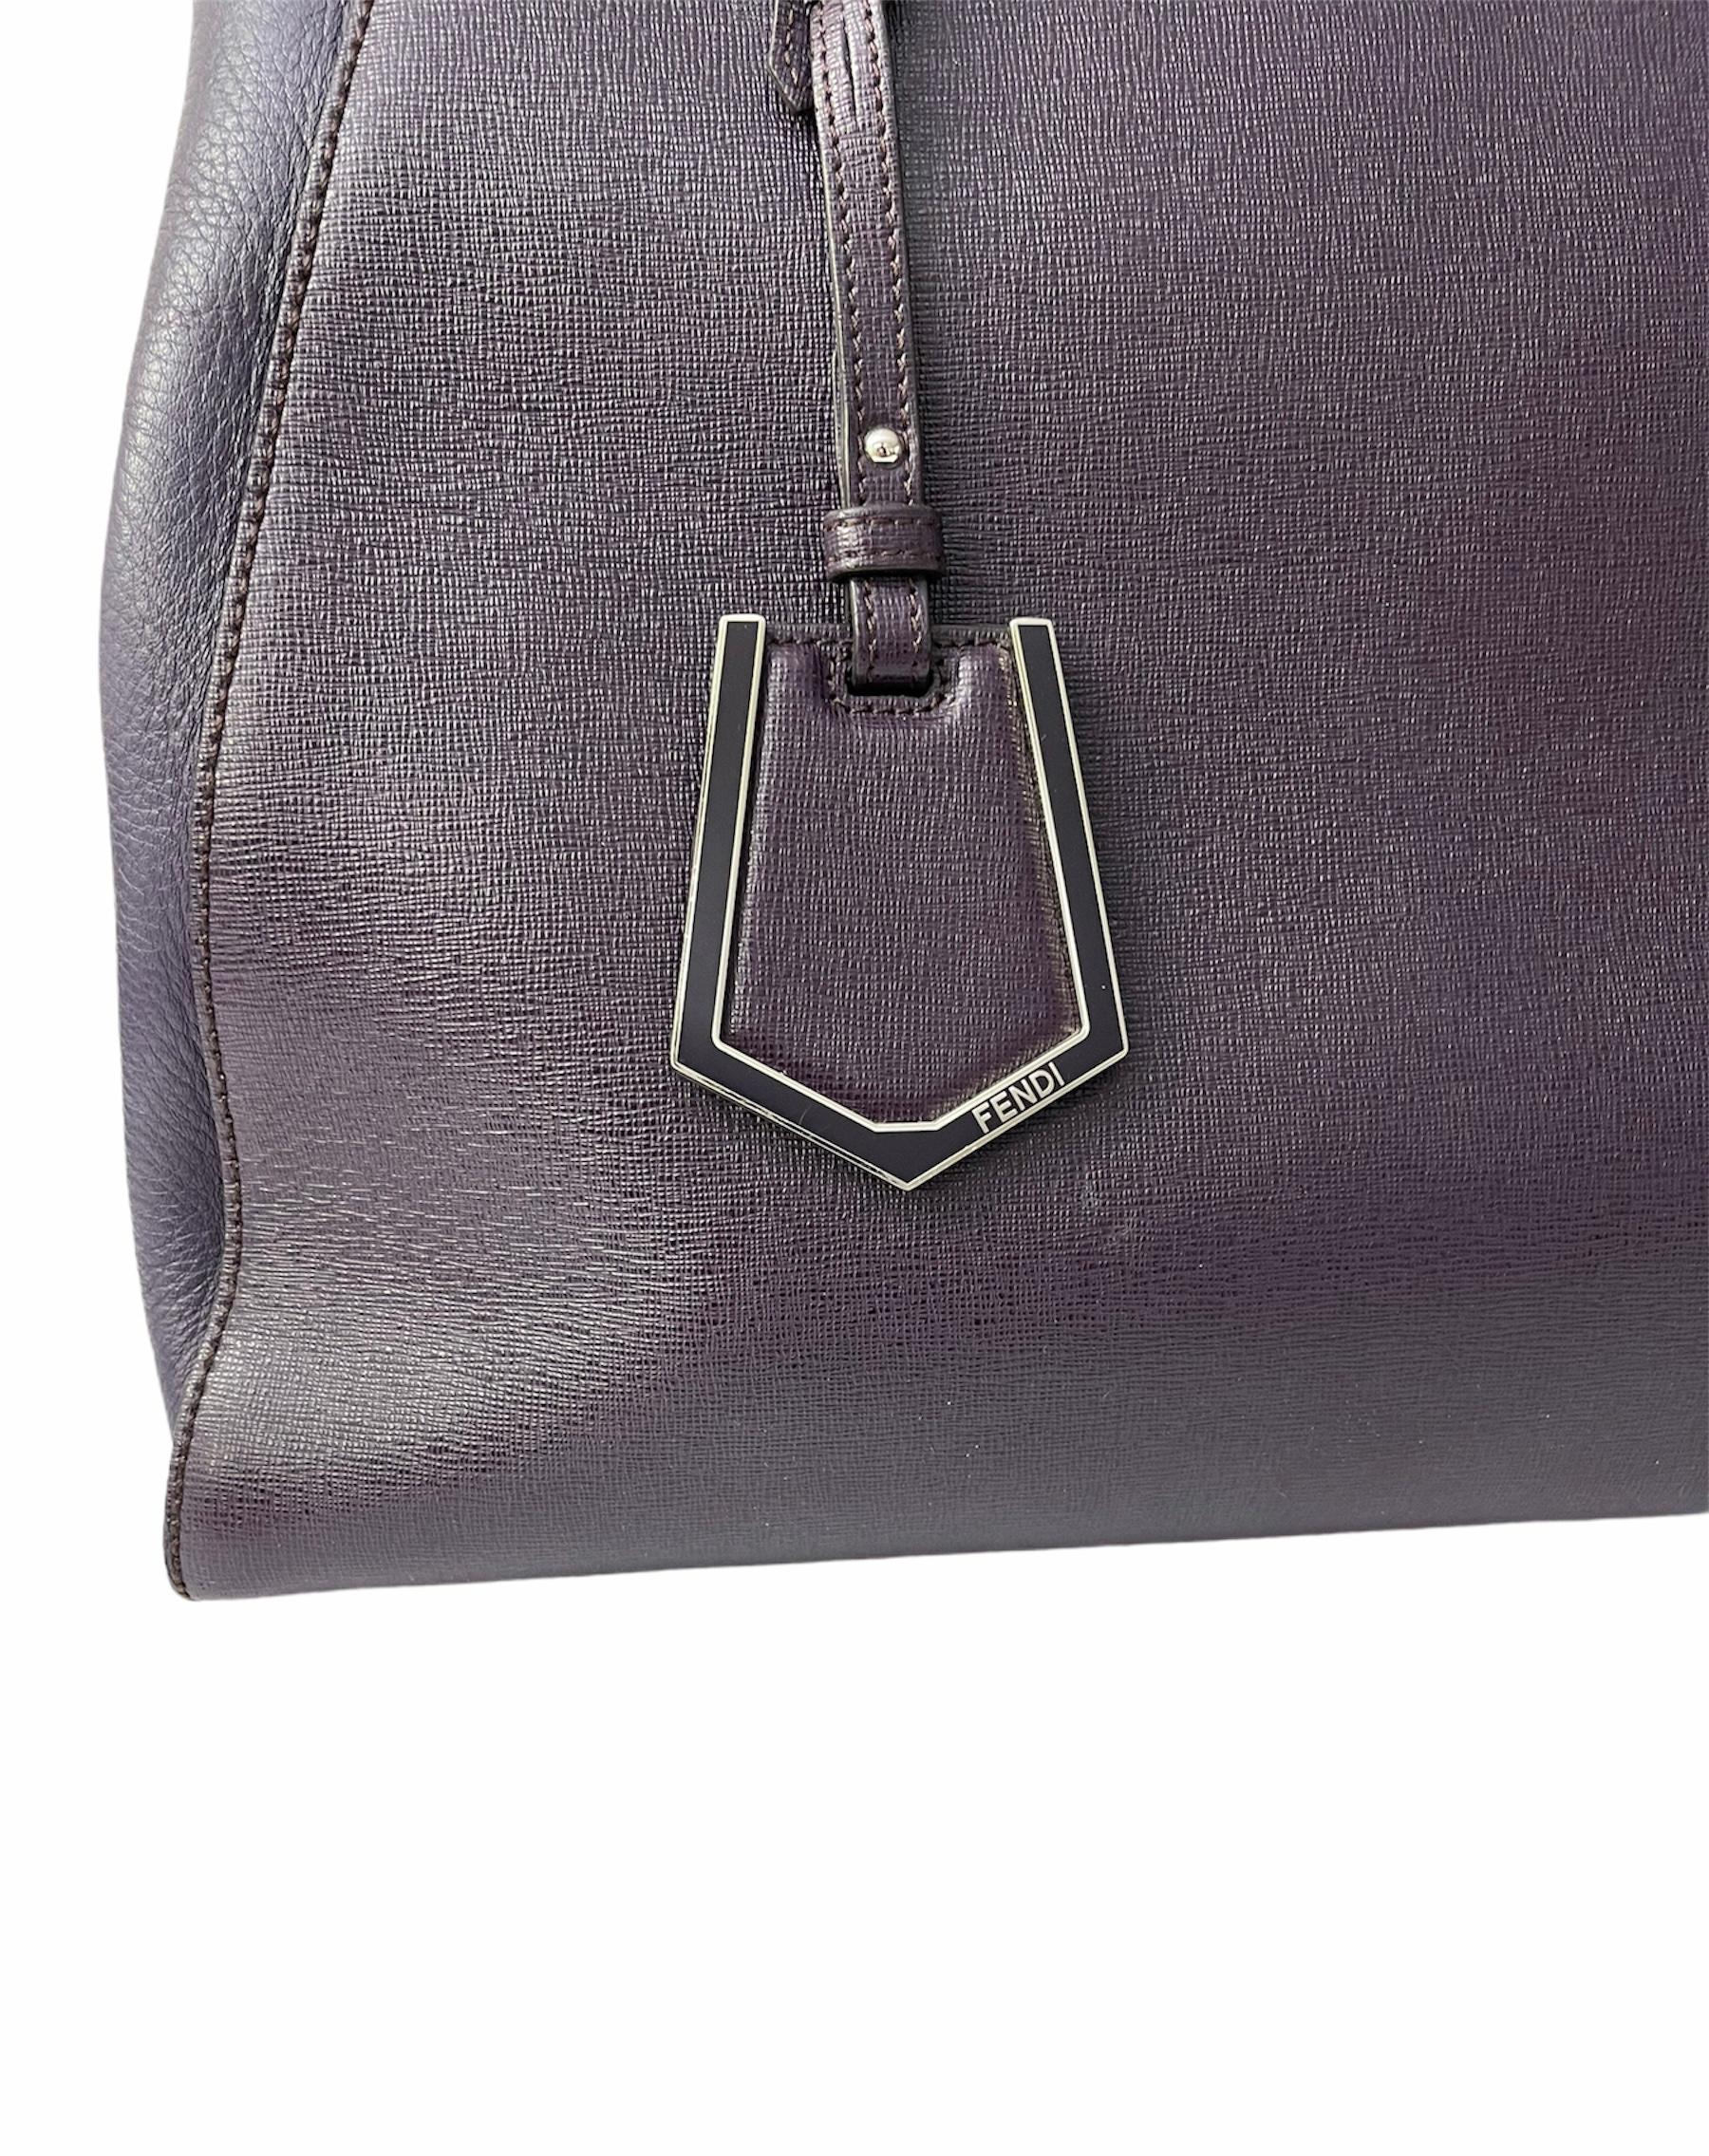 Black Fendi Purple Leather 2Jours Handbag